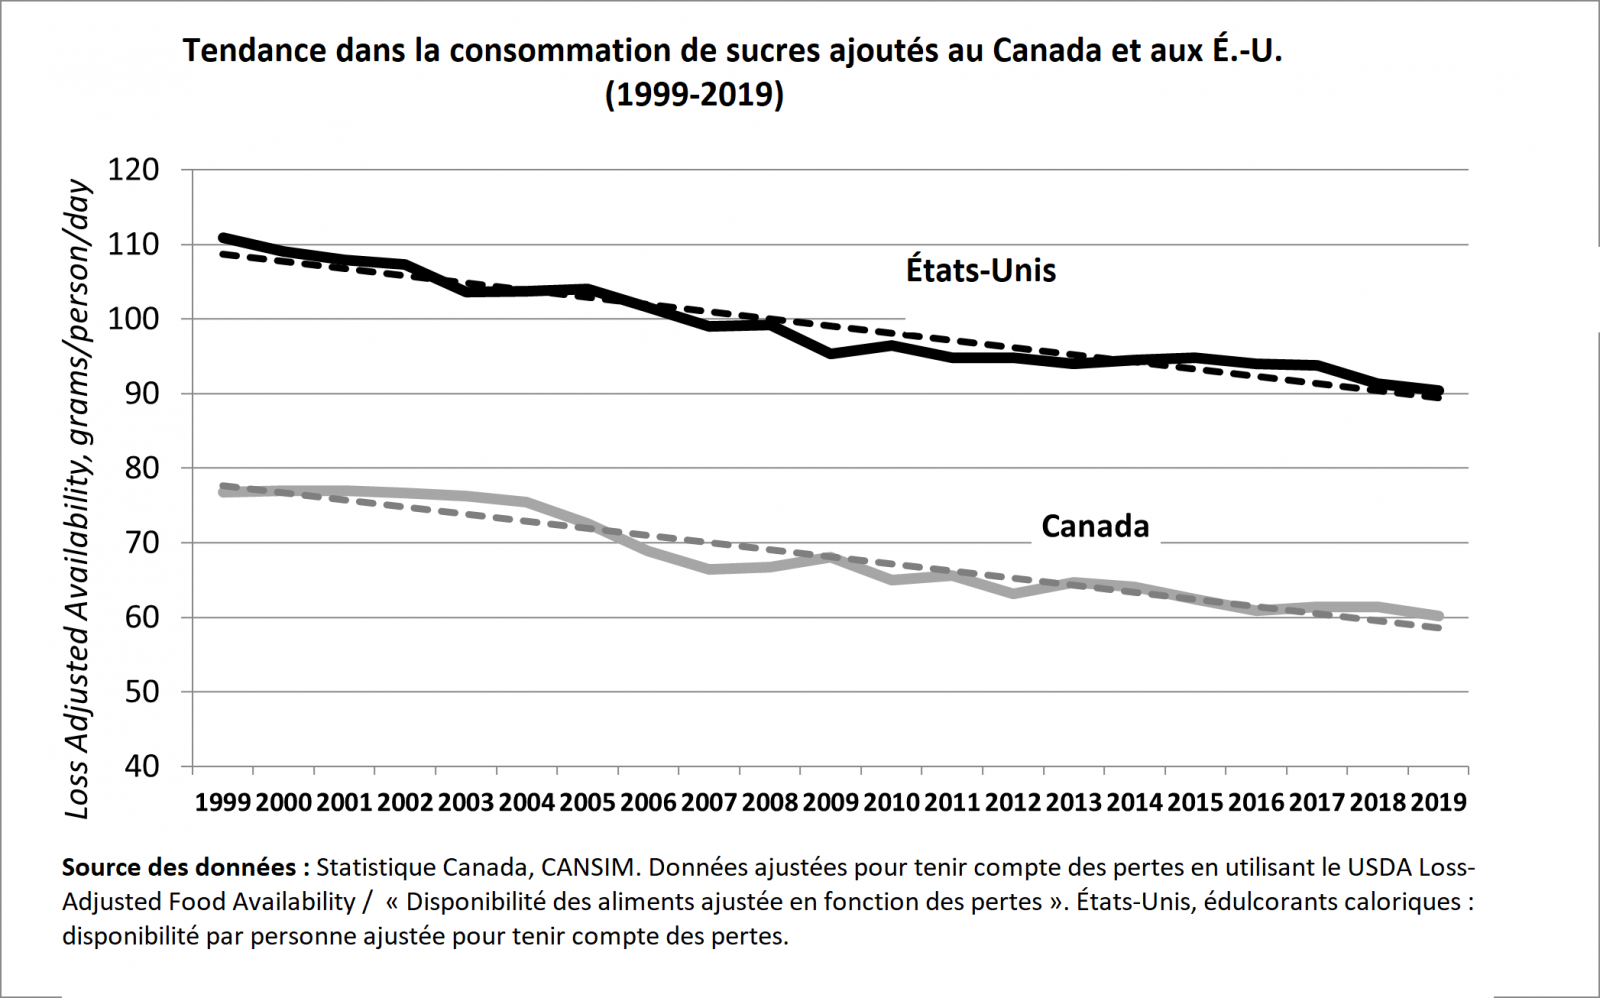 Tendance dans la consommation de sucres ajoutés au Canada et aux Etats-Unis (1999-2019)